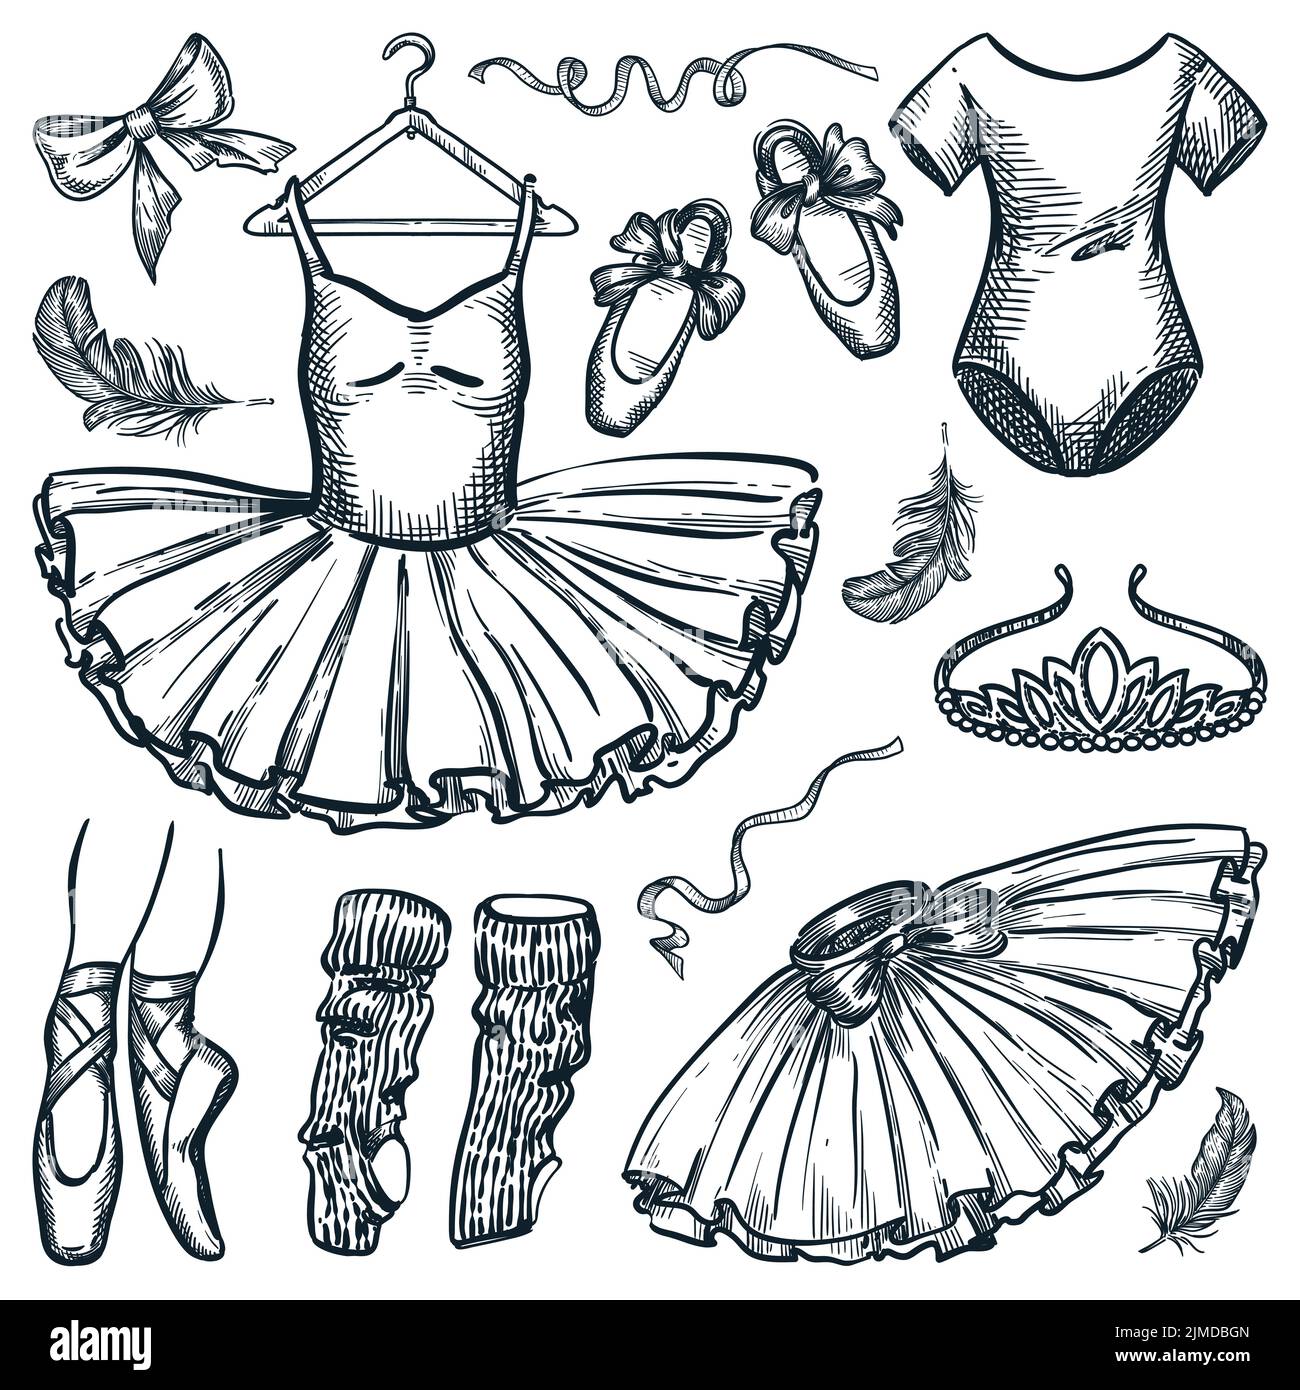 Elementos de diseño de danza de ballet aislados sobre fondo blanco. Ilustración dibujada a mano vectorial del vestido de bailarina, los zapatos de pointe, el pelele y la tiara Ilustración del Vector